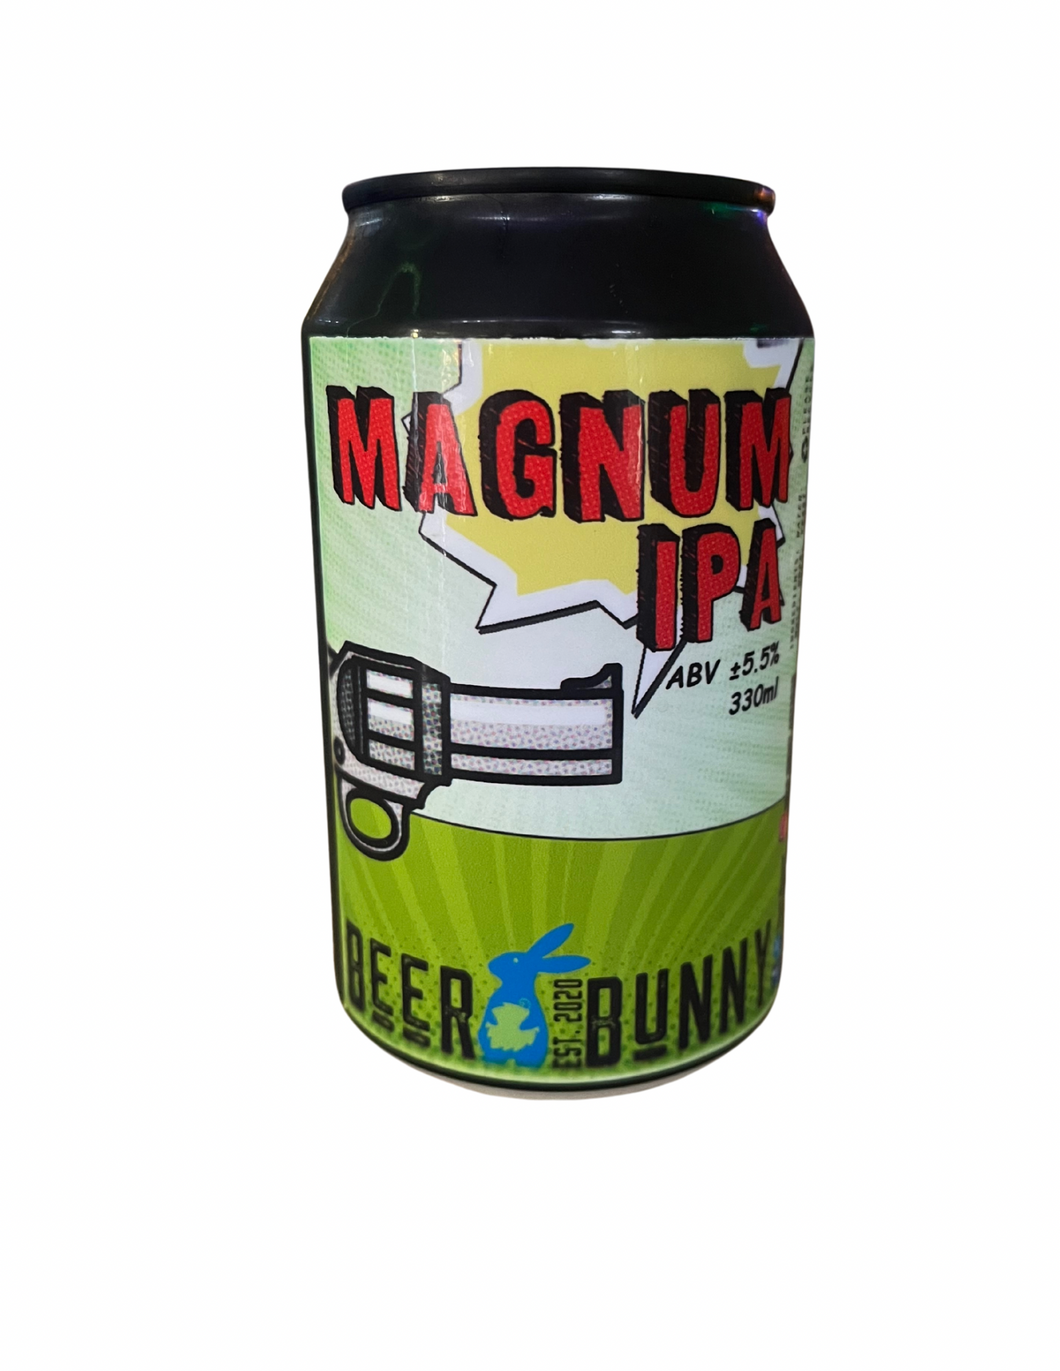 Beer Bunny Magnum IPA